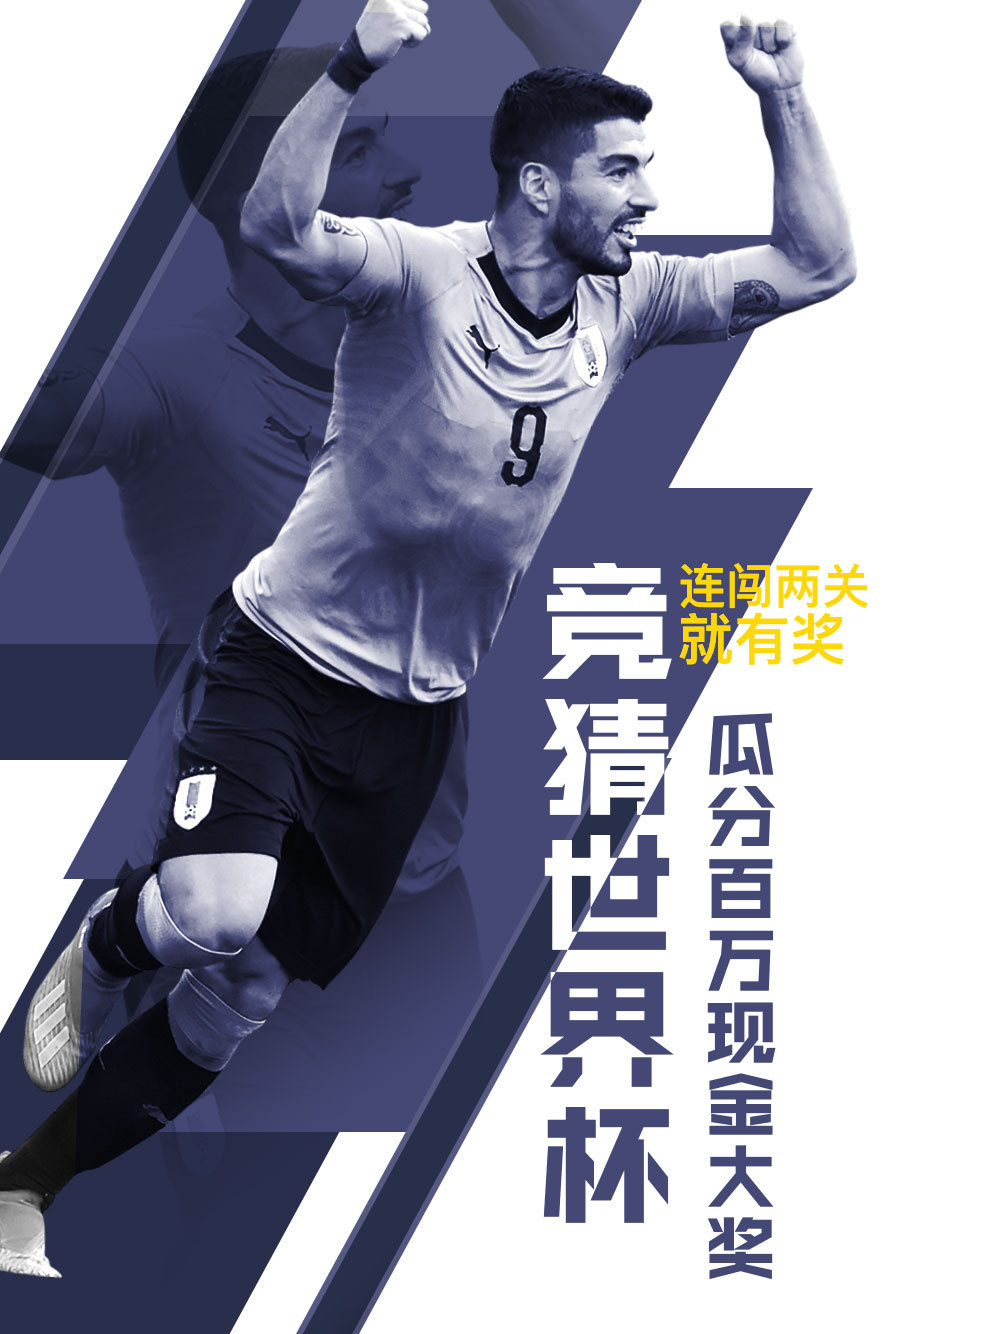 世界杯足球体育运动健身球星球赛宣传海报AP